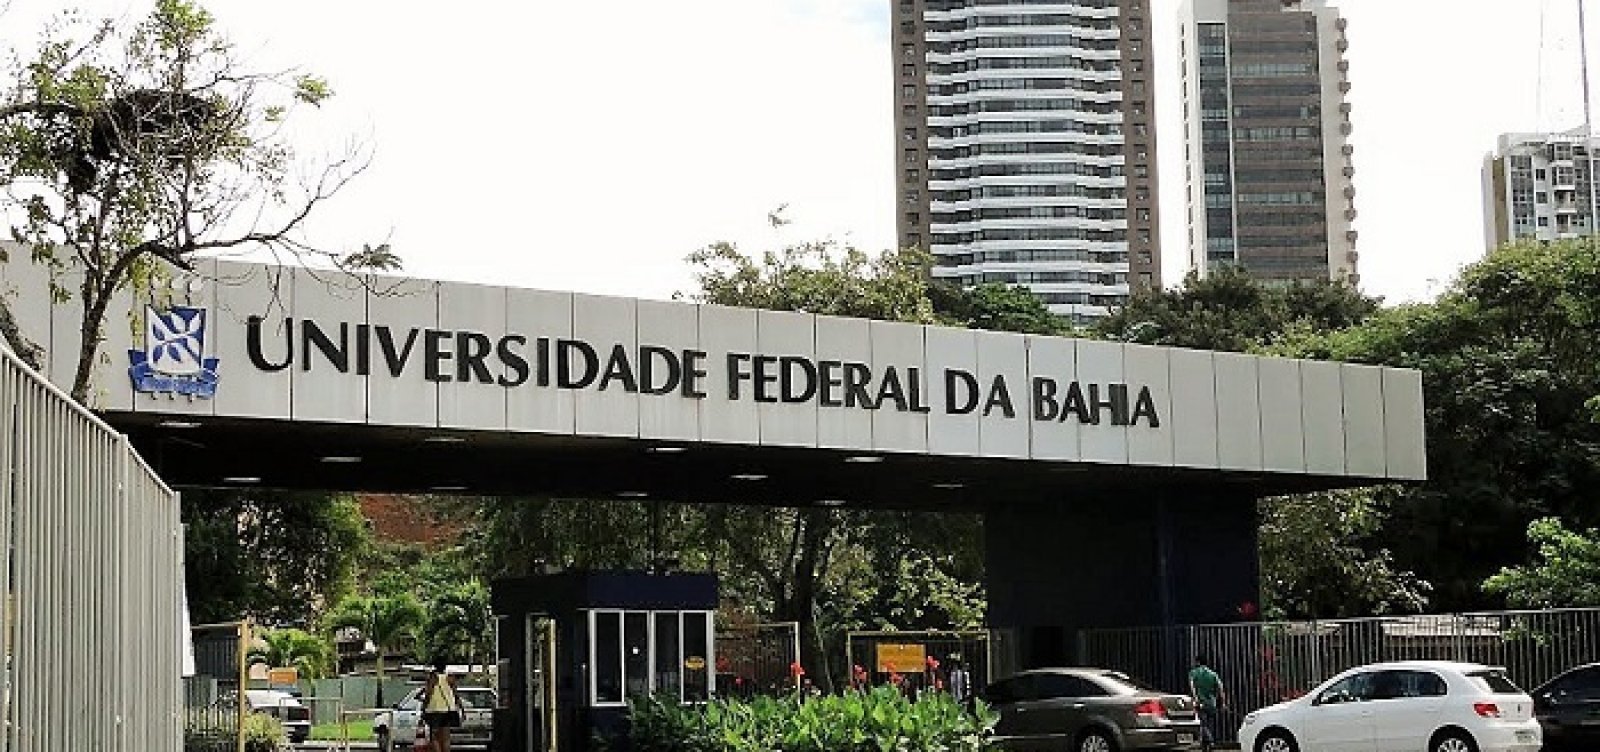 Reitor da UFBA diz que universidade precisa sanar problemas antes de novo campus anunciado por Lula